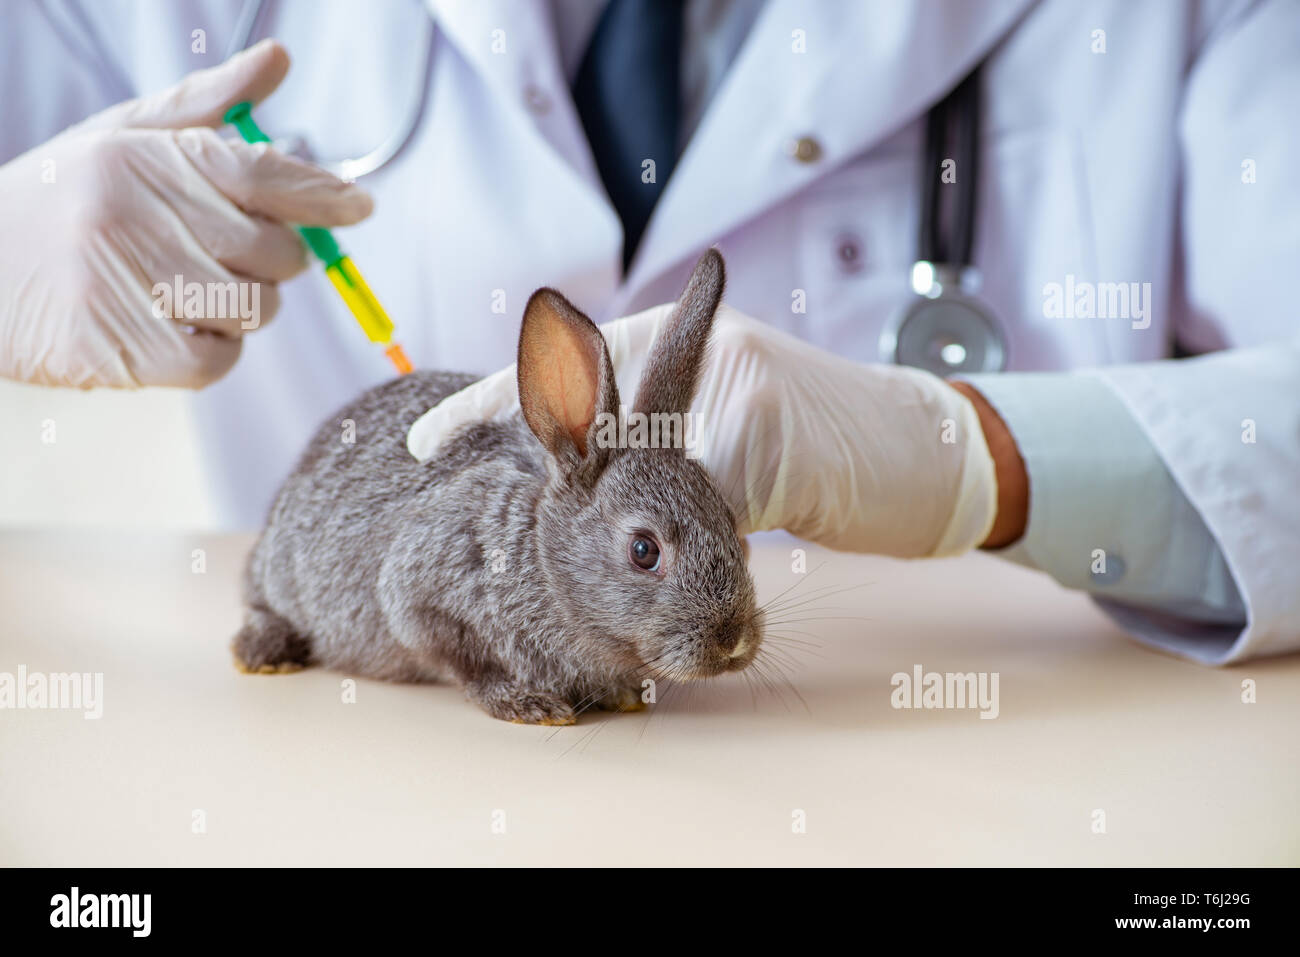 Какие животные лечат. Миксоматоз у кроликов вакцина. ВГБК вакцина для кроликов. Миксоматоз кроликов вакцинация. Лабораторные животные кролики.